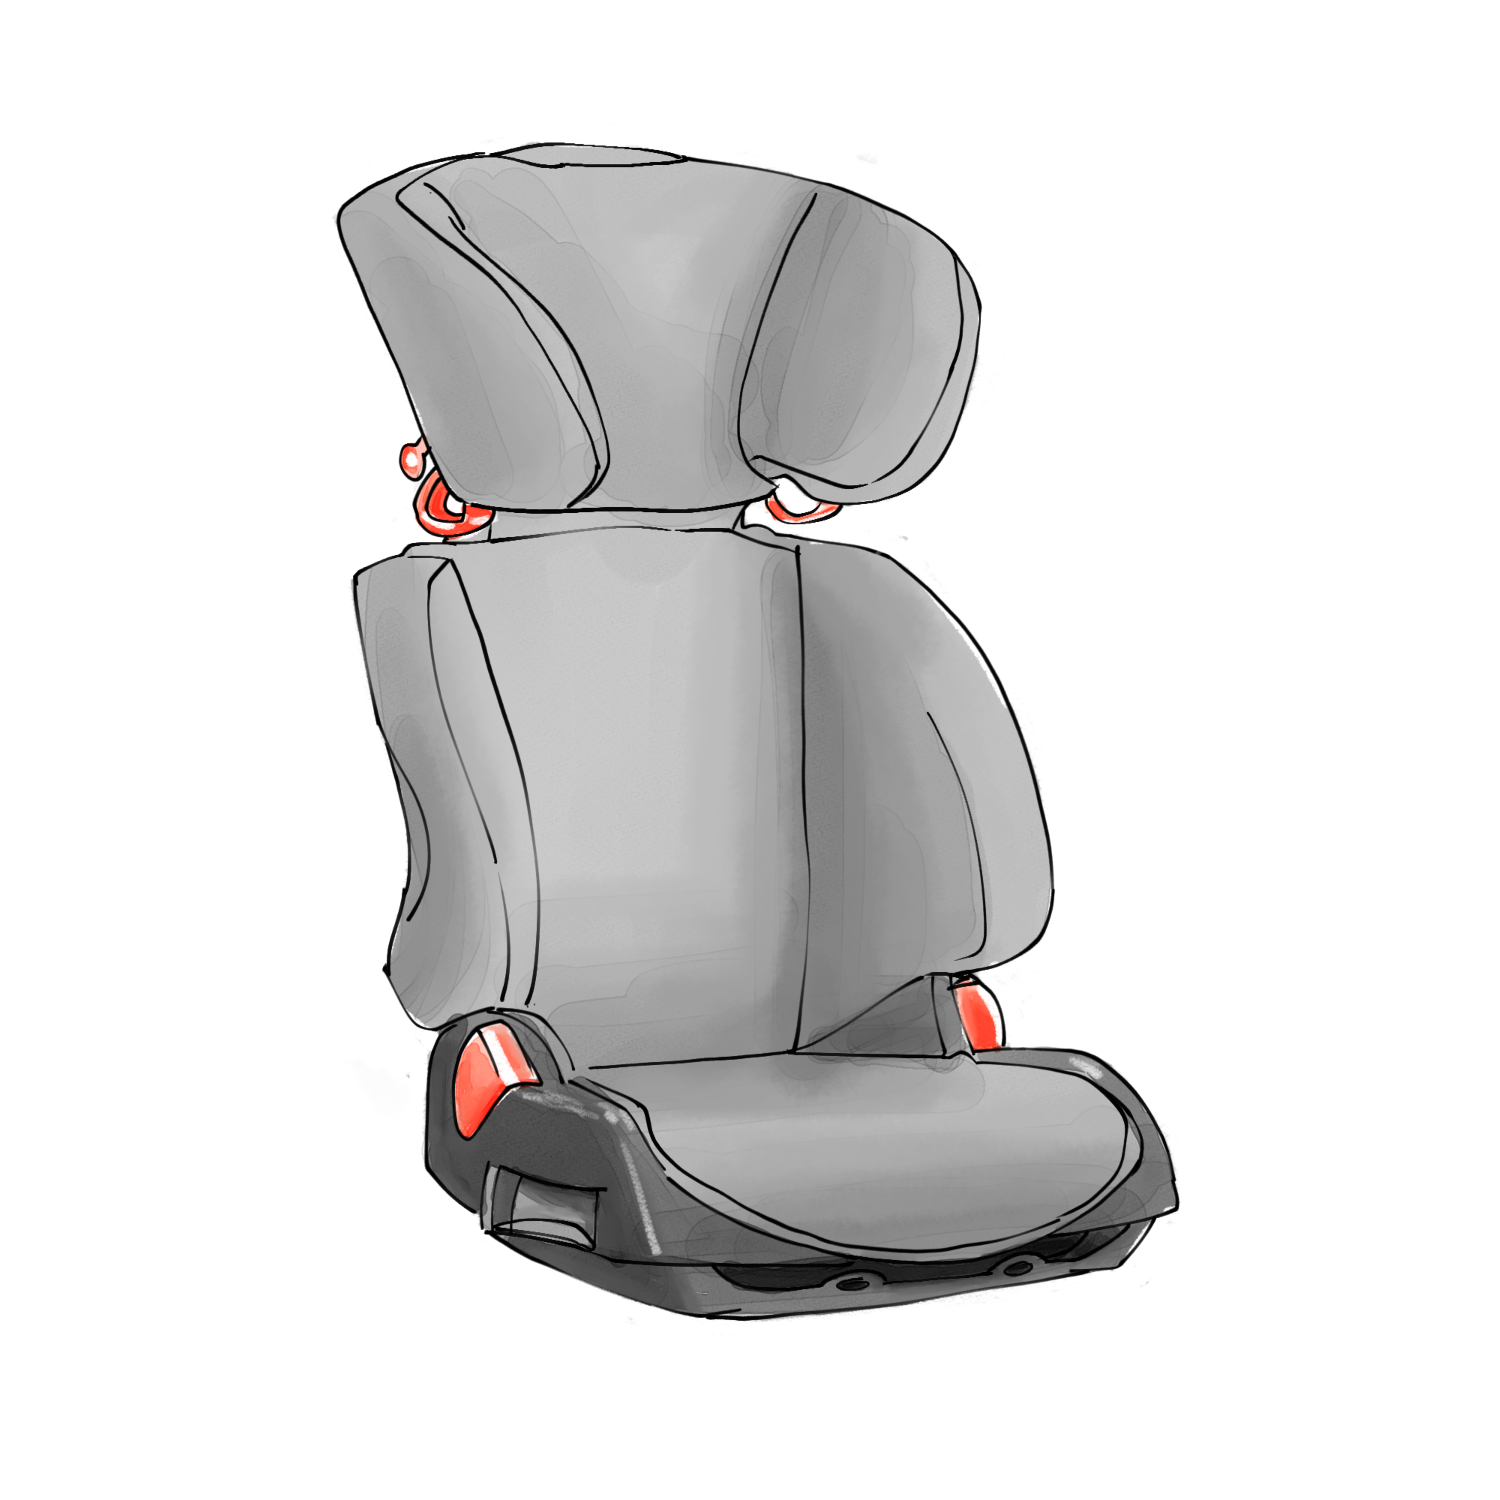  Product image 1 of the product “Child seat Ergoline ”